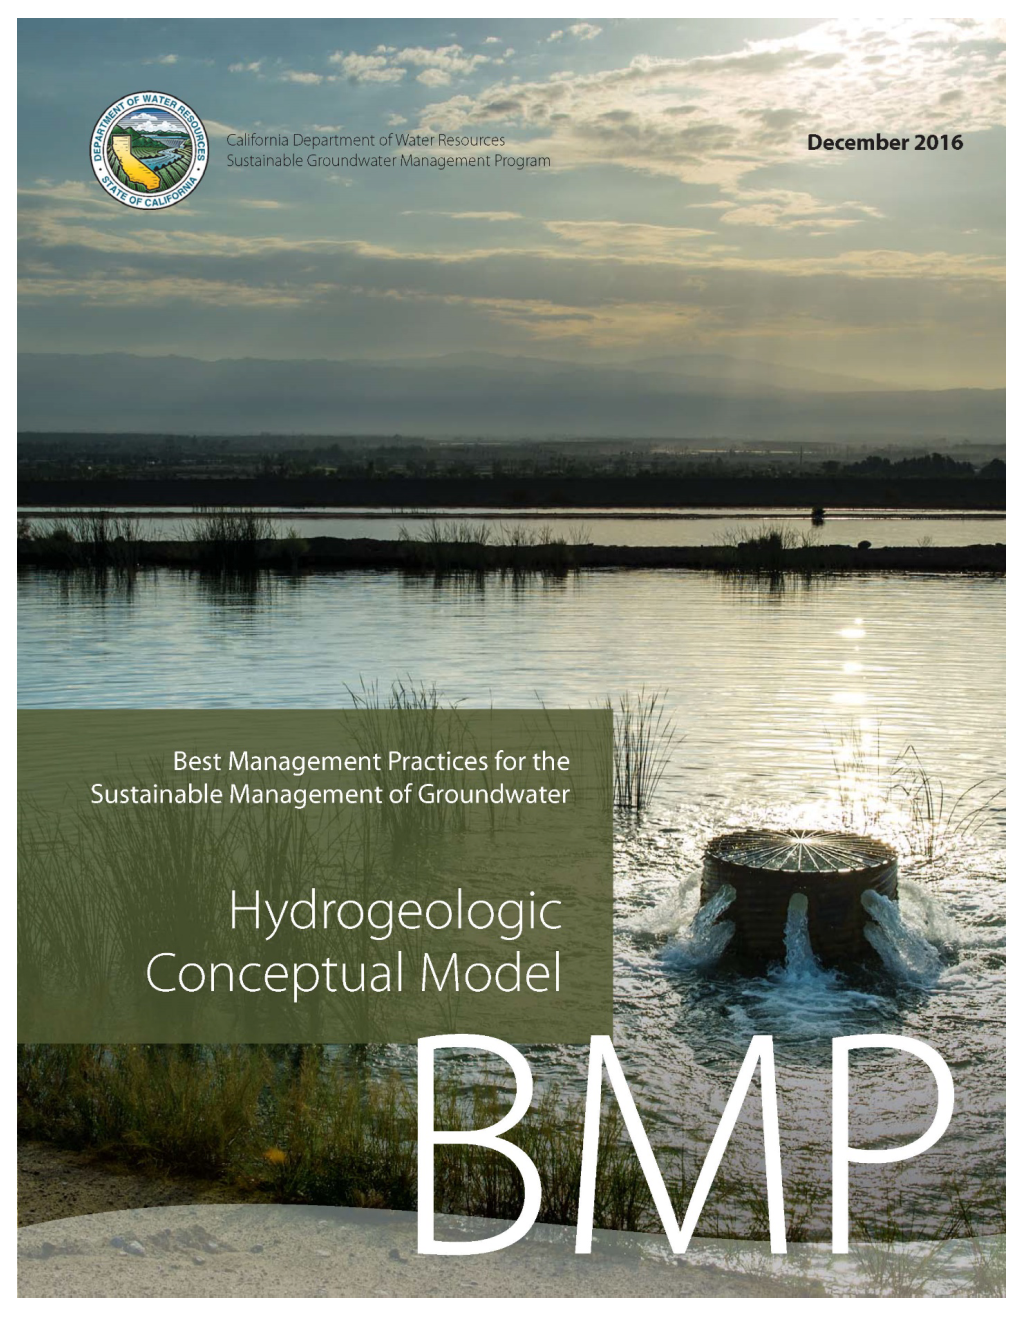 Hydrogeologic Conceptual Model Best Management Practice